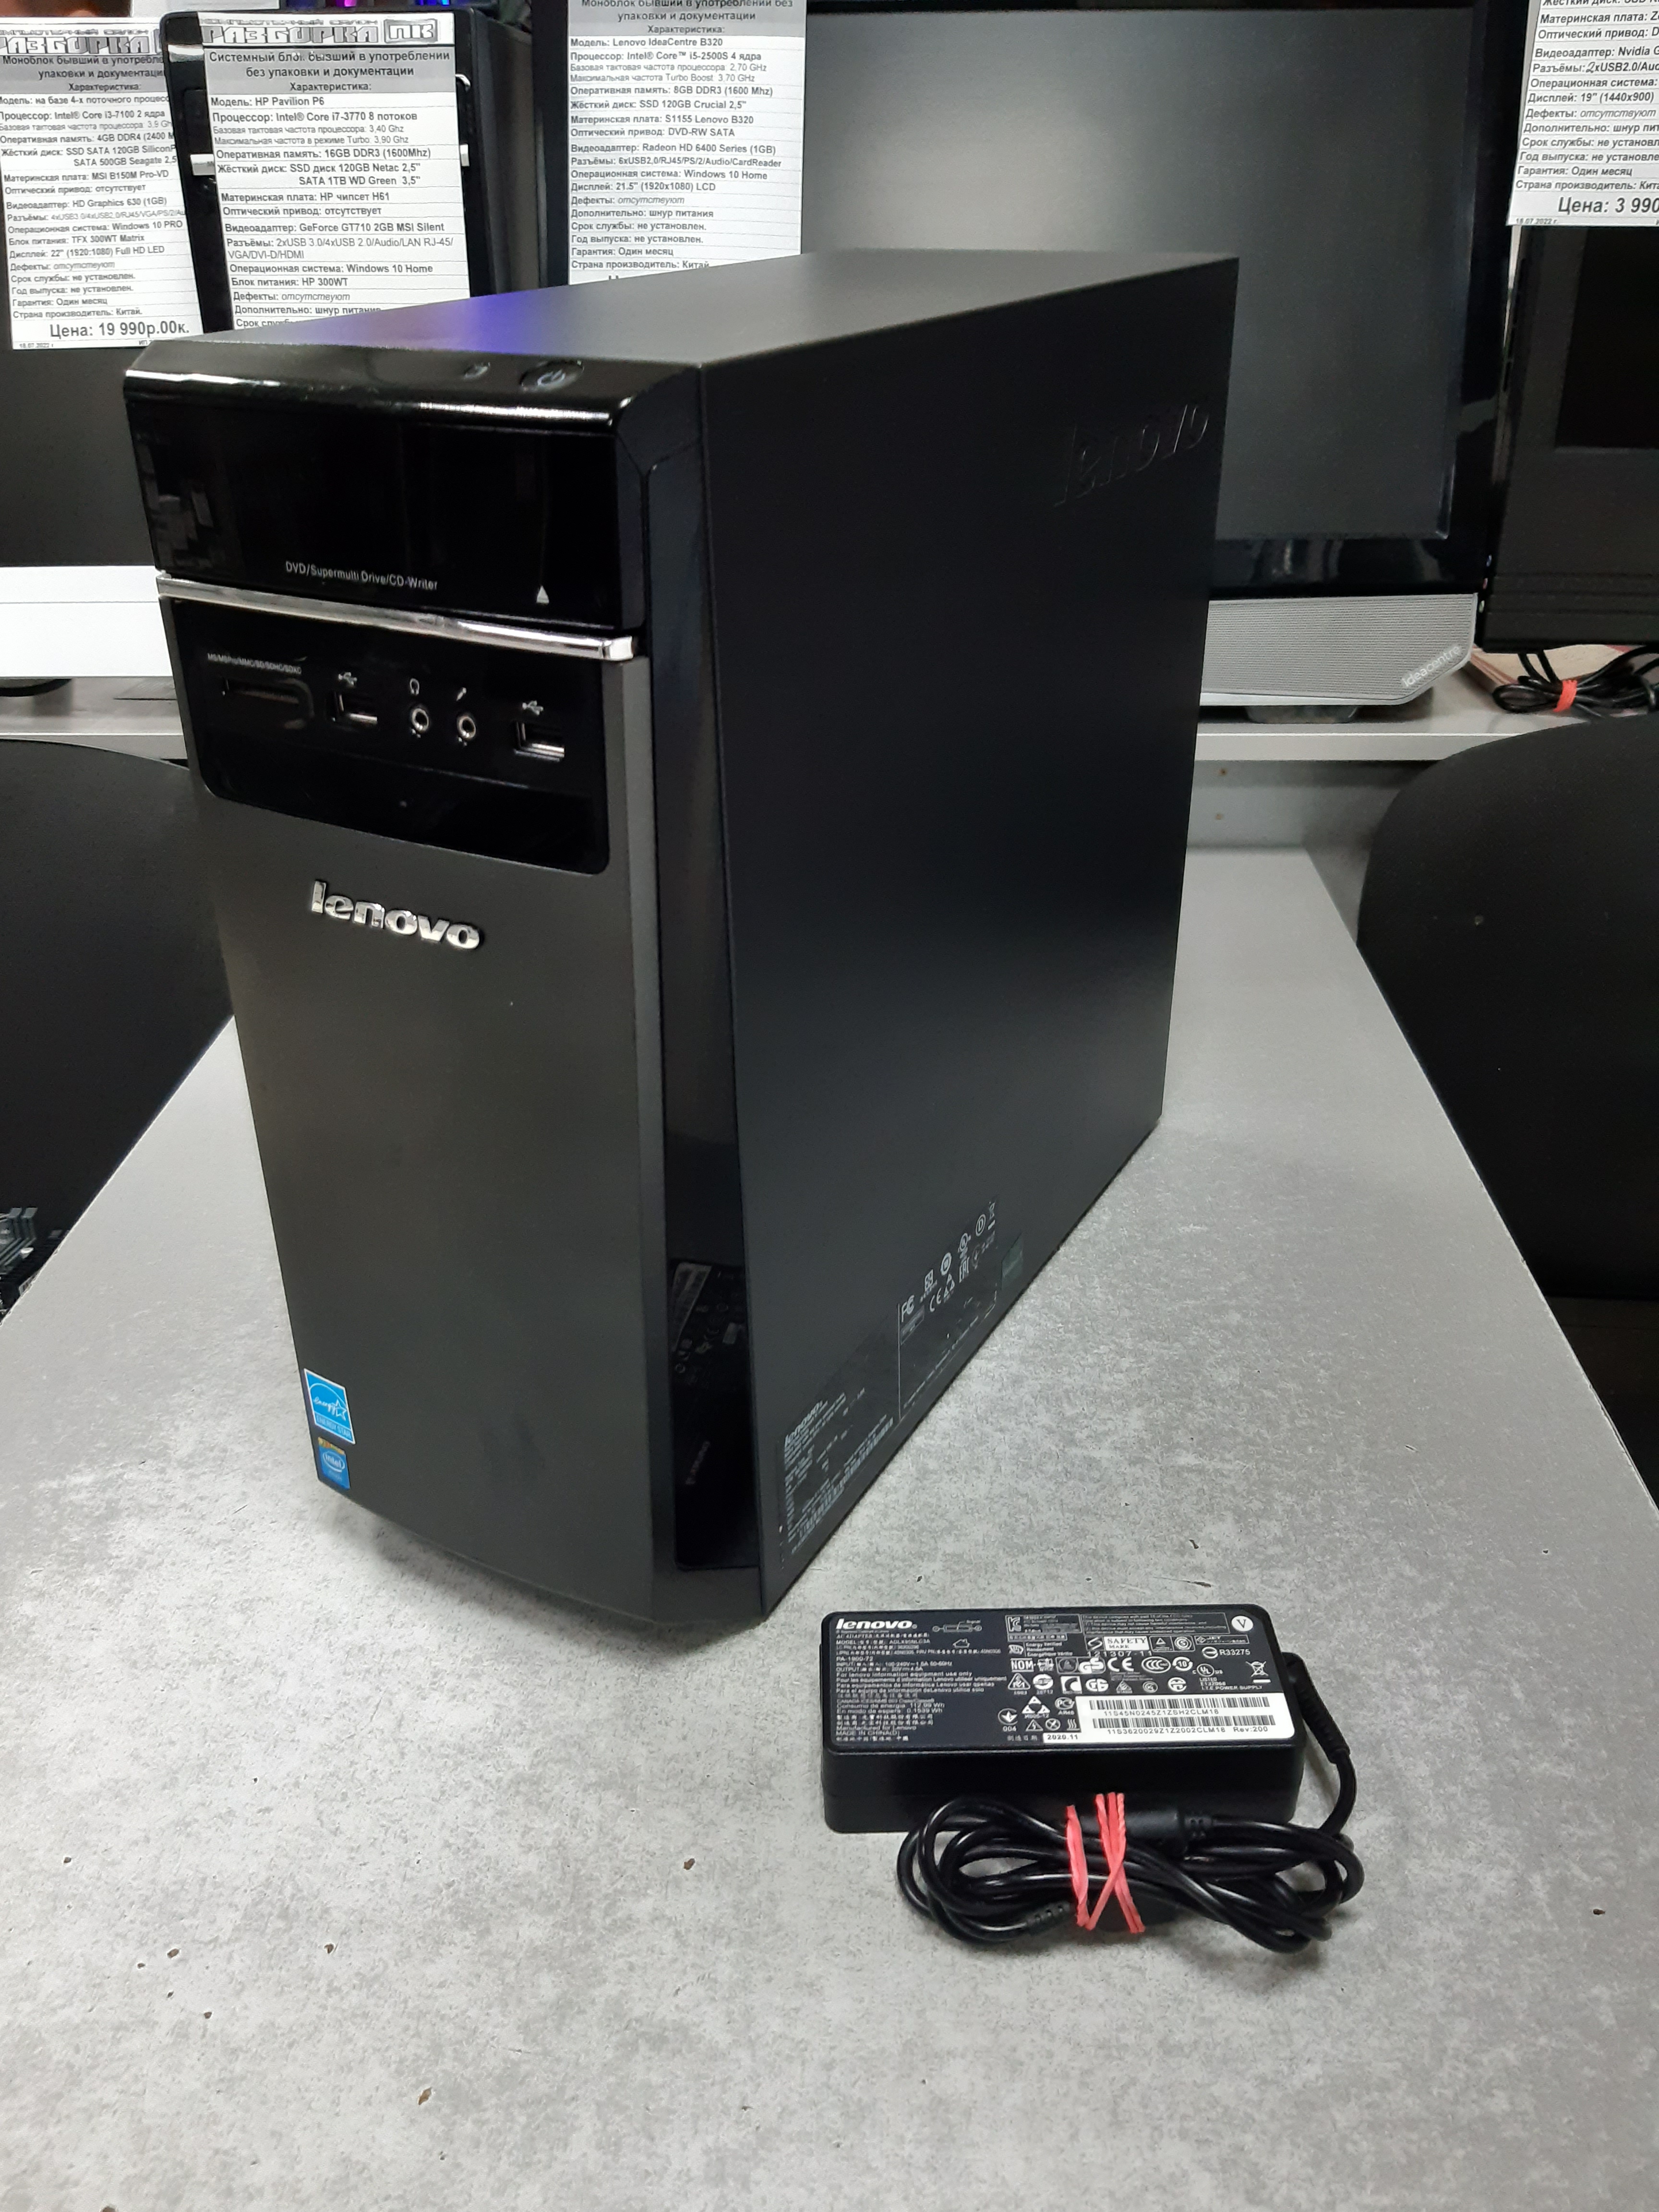 Системный блок Lenovo H50-00